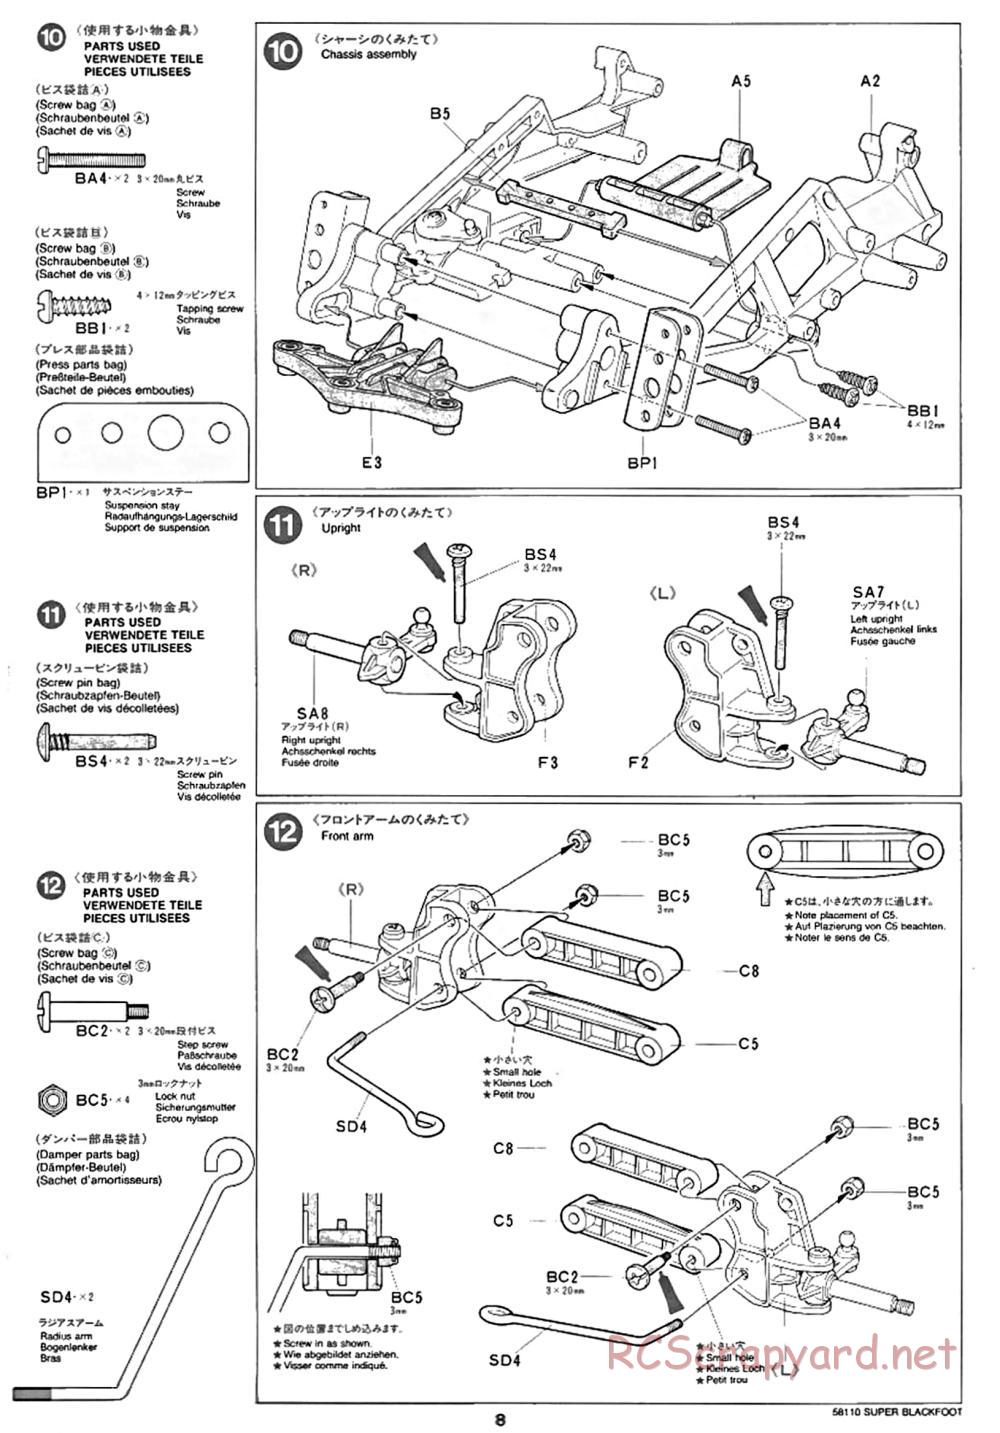 Tamiya - Super Blackfoot Chassis - Manual - Page 8